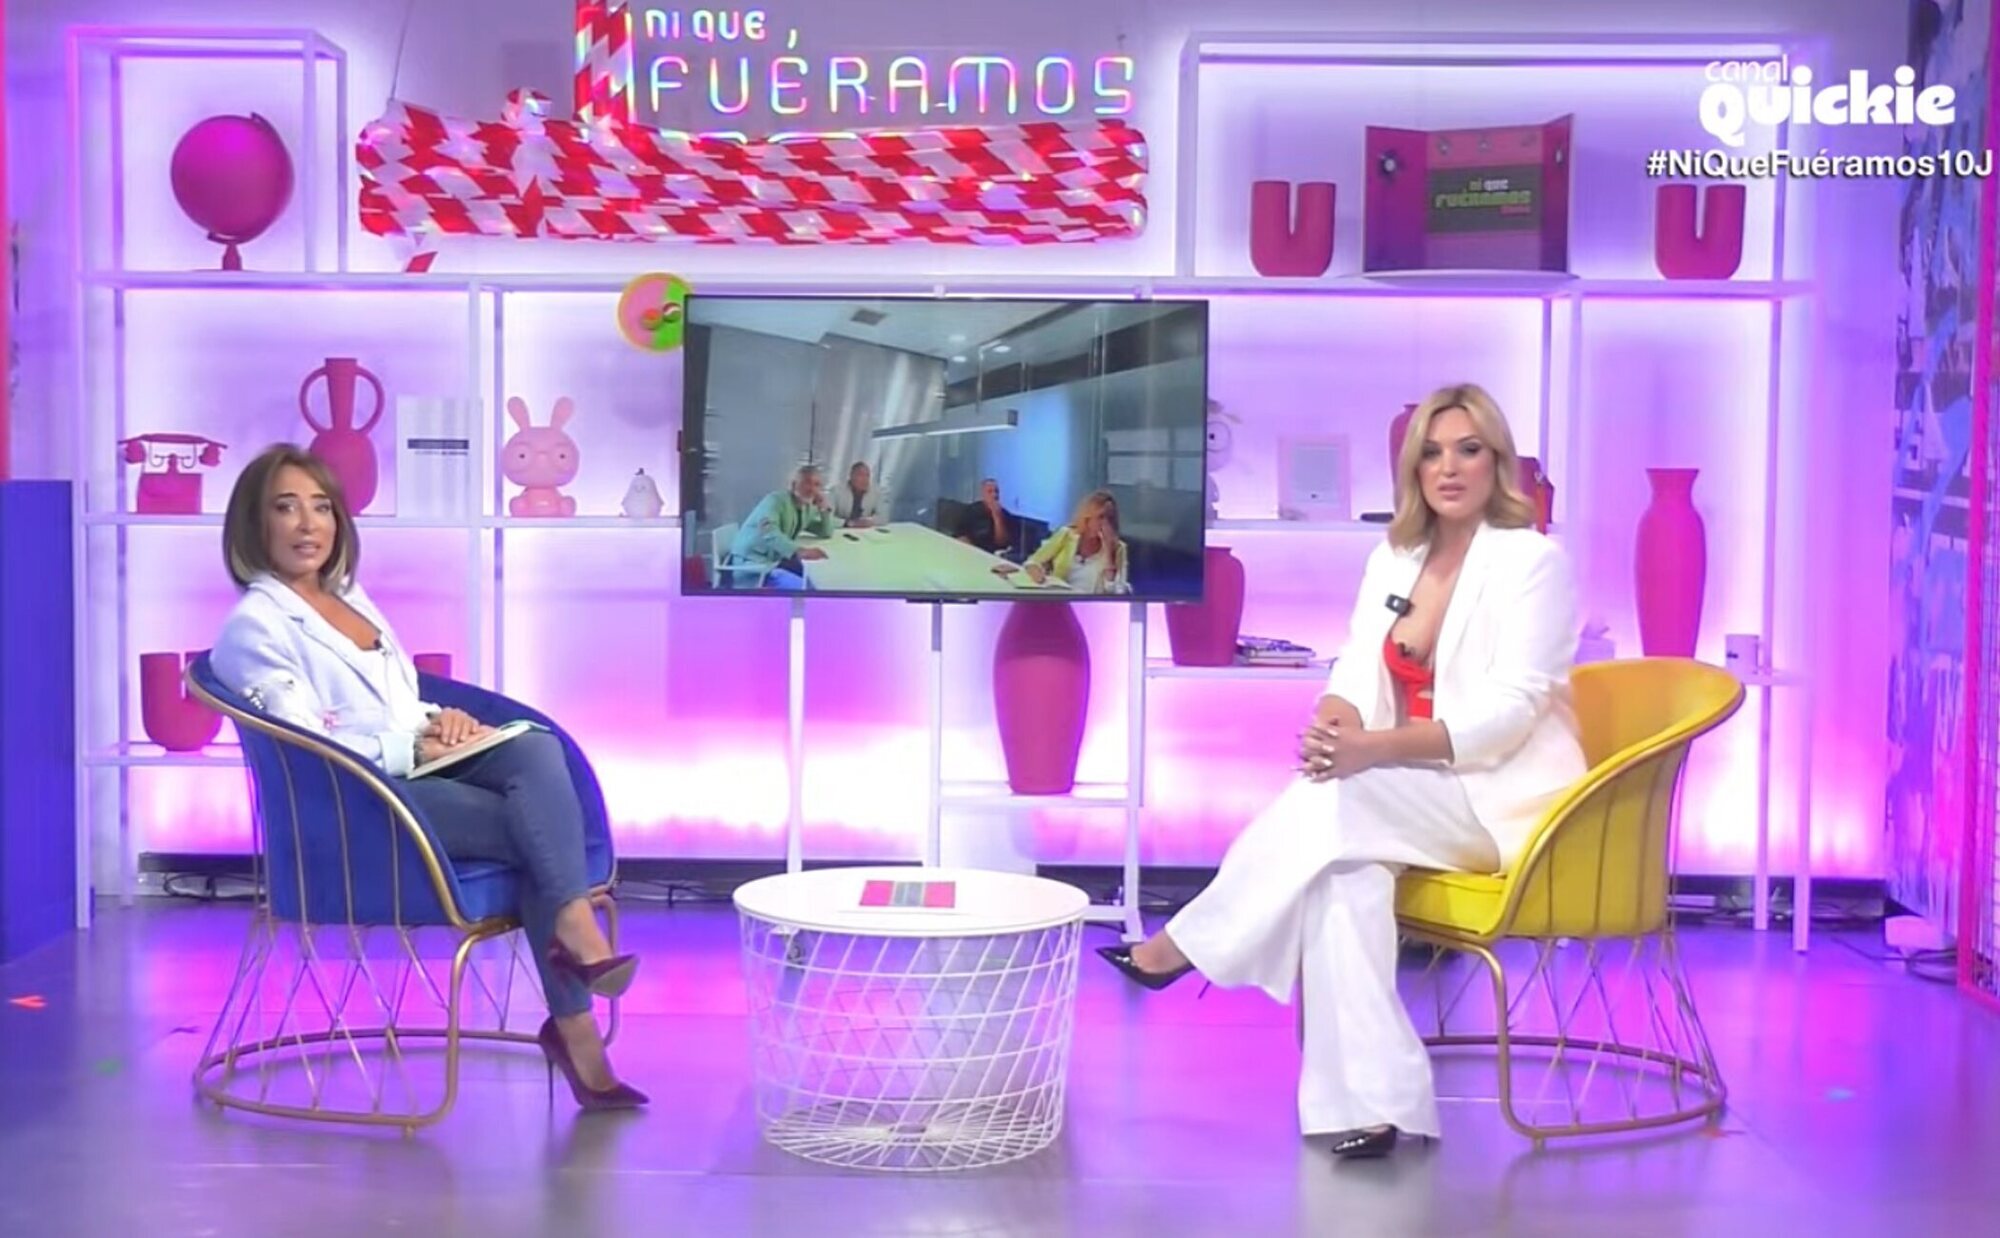 Marta Riesco vuelve a la televisión en 'Ni que fuéramos shhh': "Como contabais cosas sobre mí que eran mentira..."